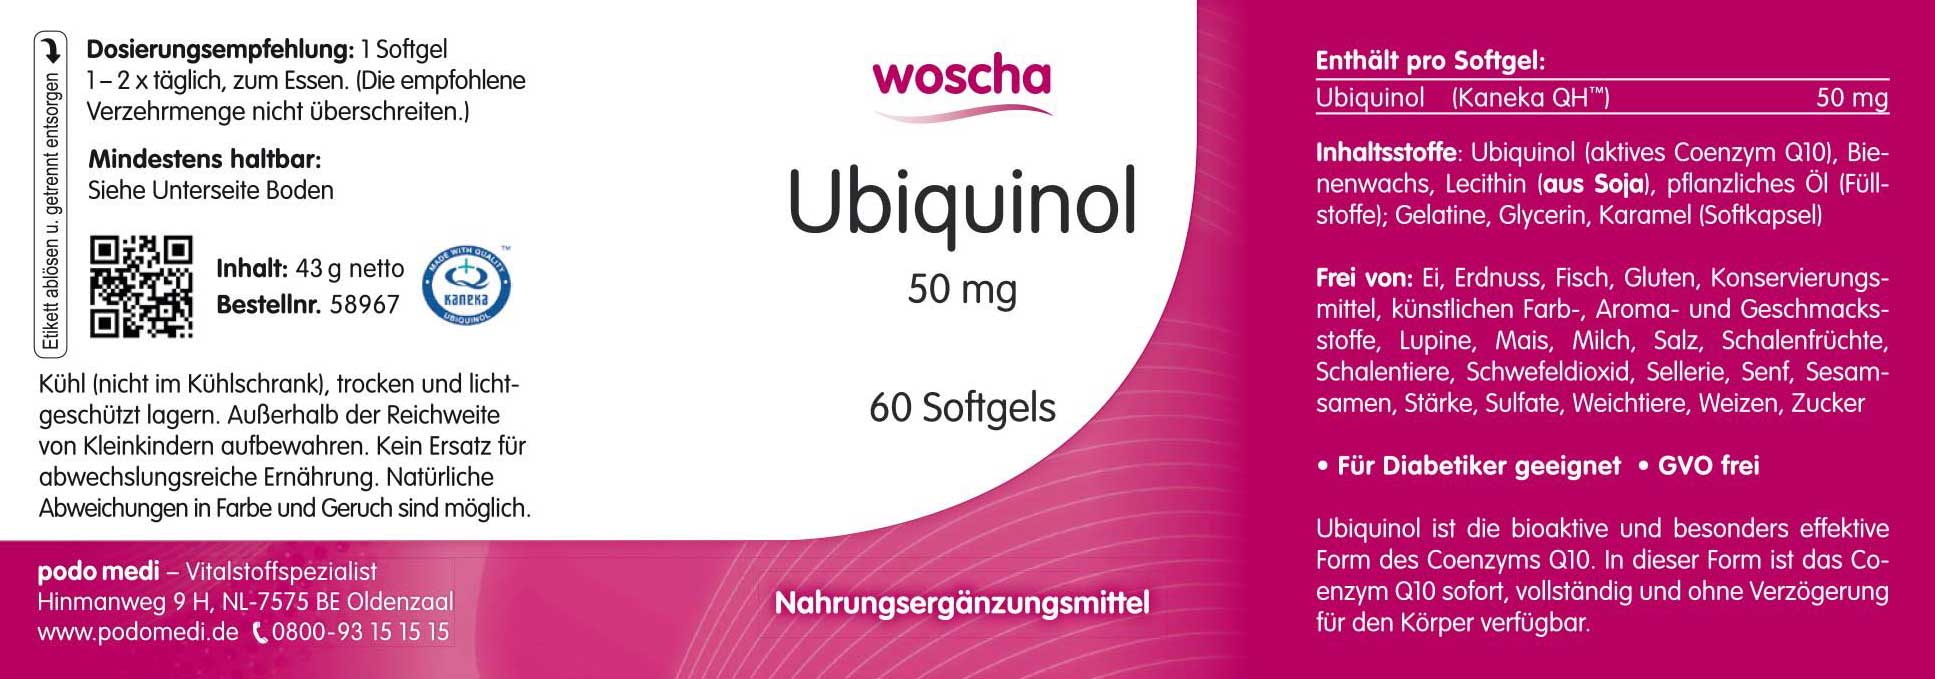 Woscha Ubiquinol 50 Milligramm von podo medi beinhaltet 60 Softgels Etikett